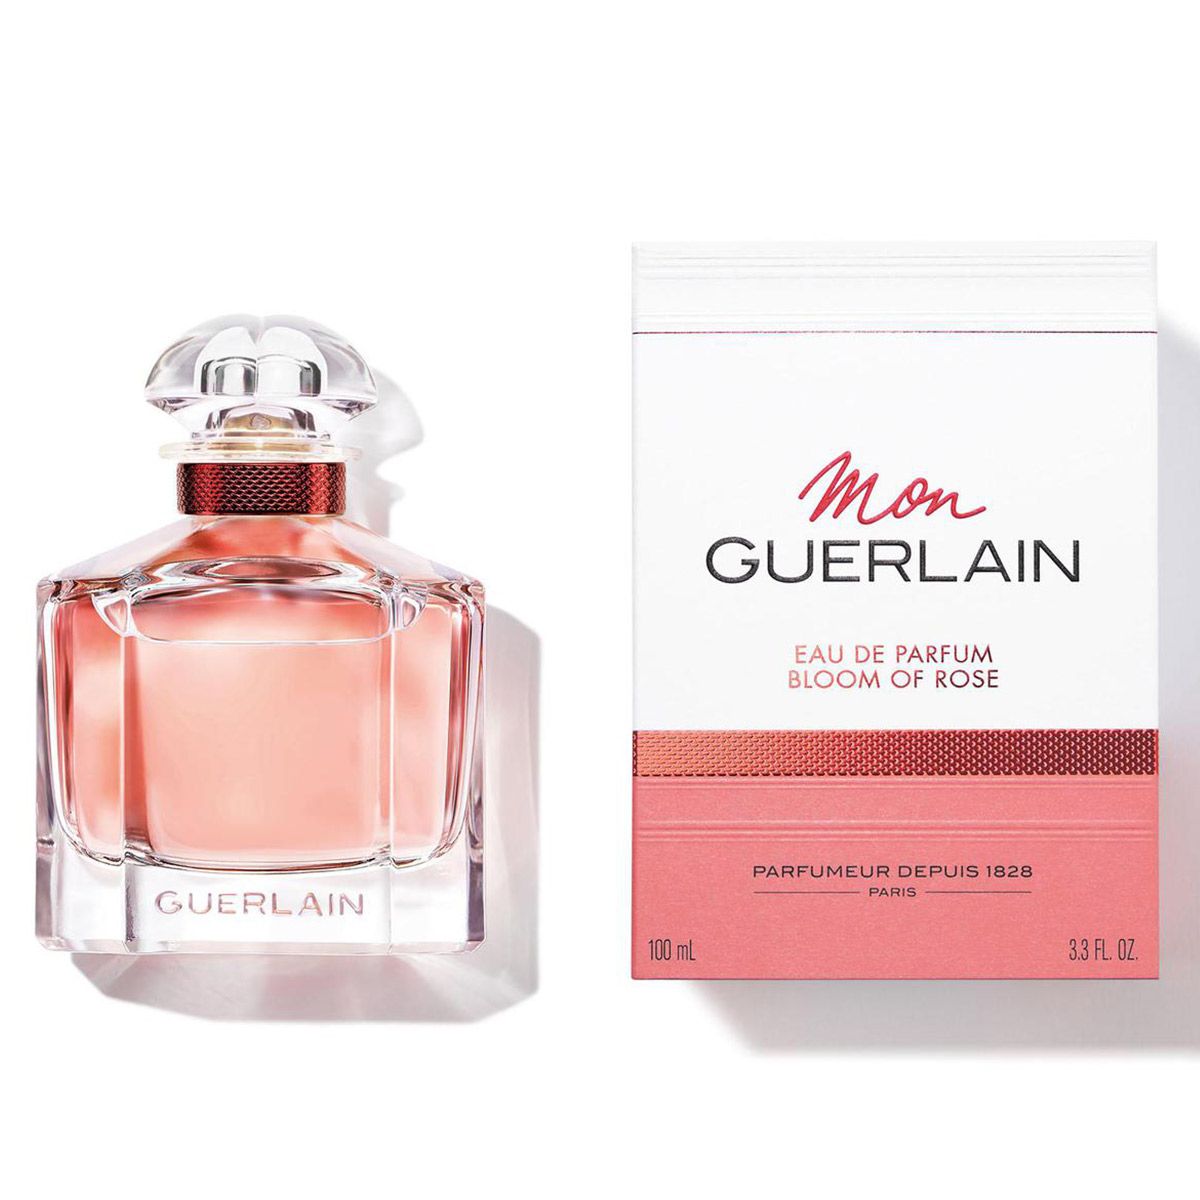  Guerlain Mon Guerlain Bloom of Rose Eau de Parfum 